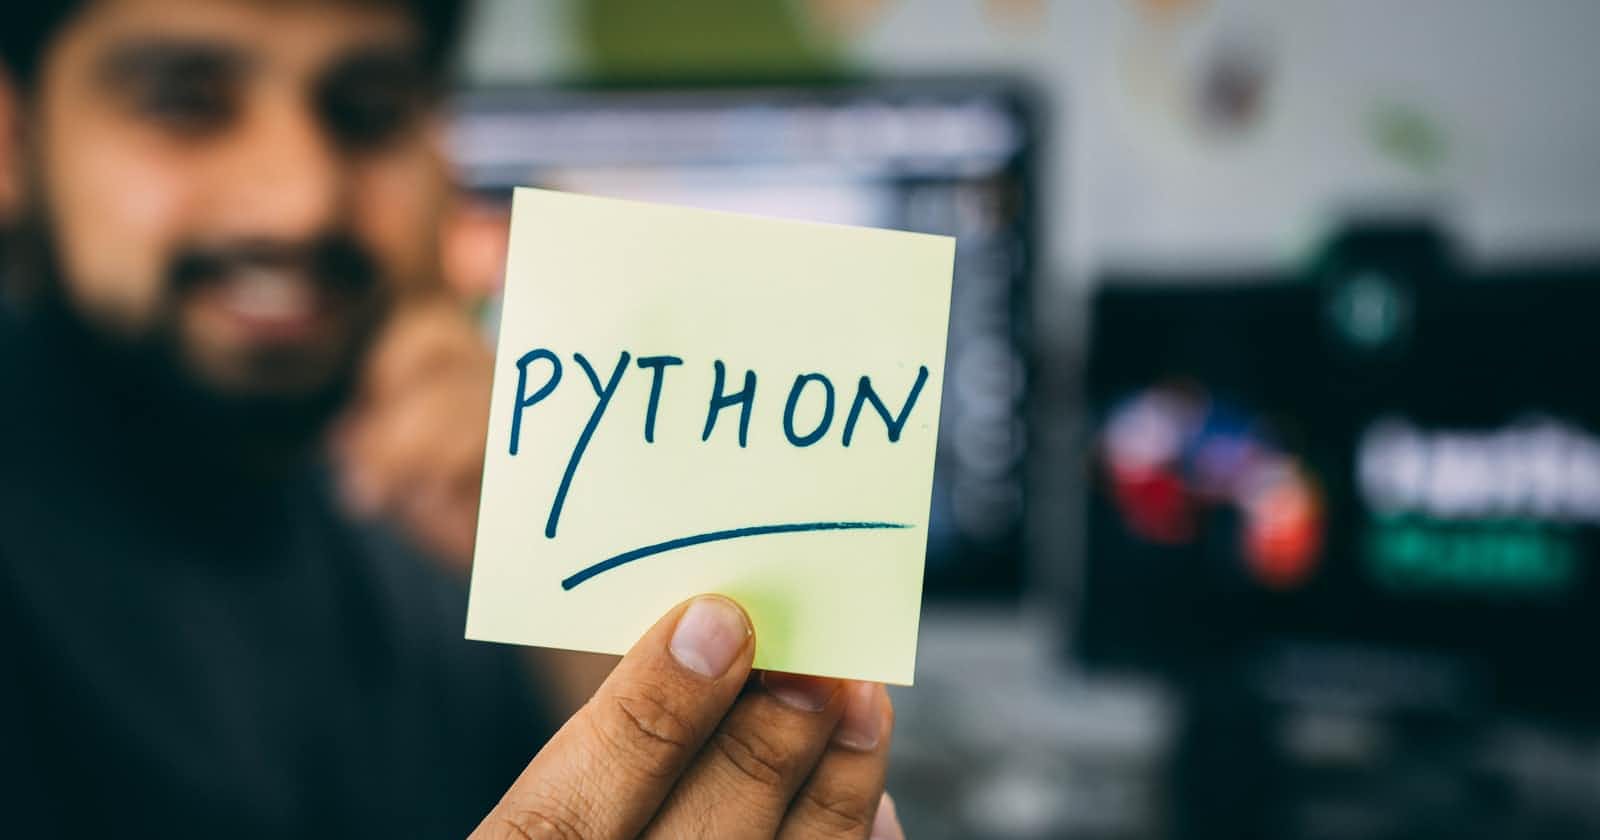 Learning Python as Javascript Developer [Part 1]